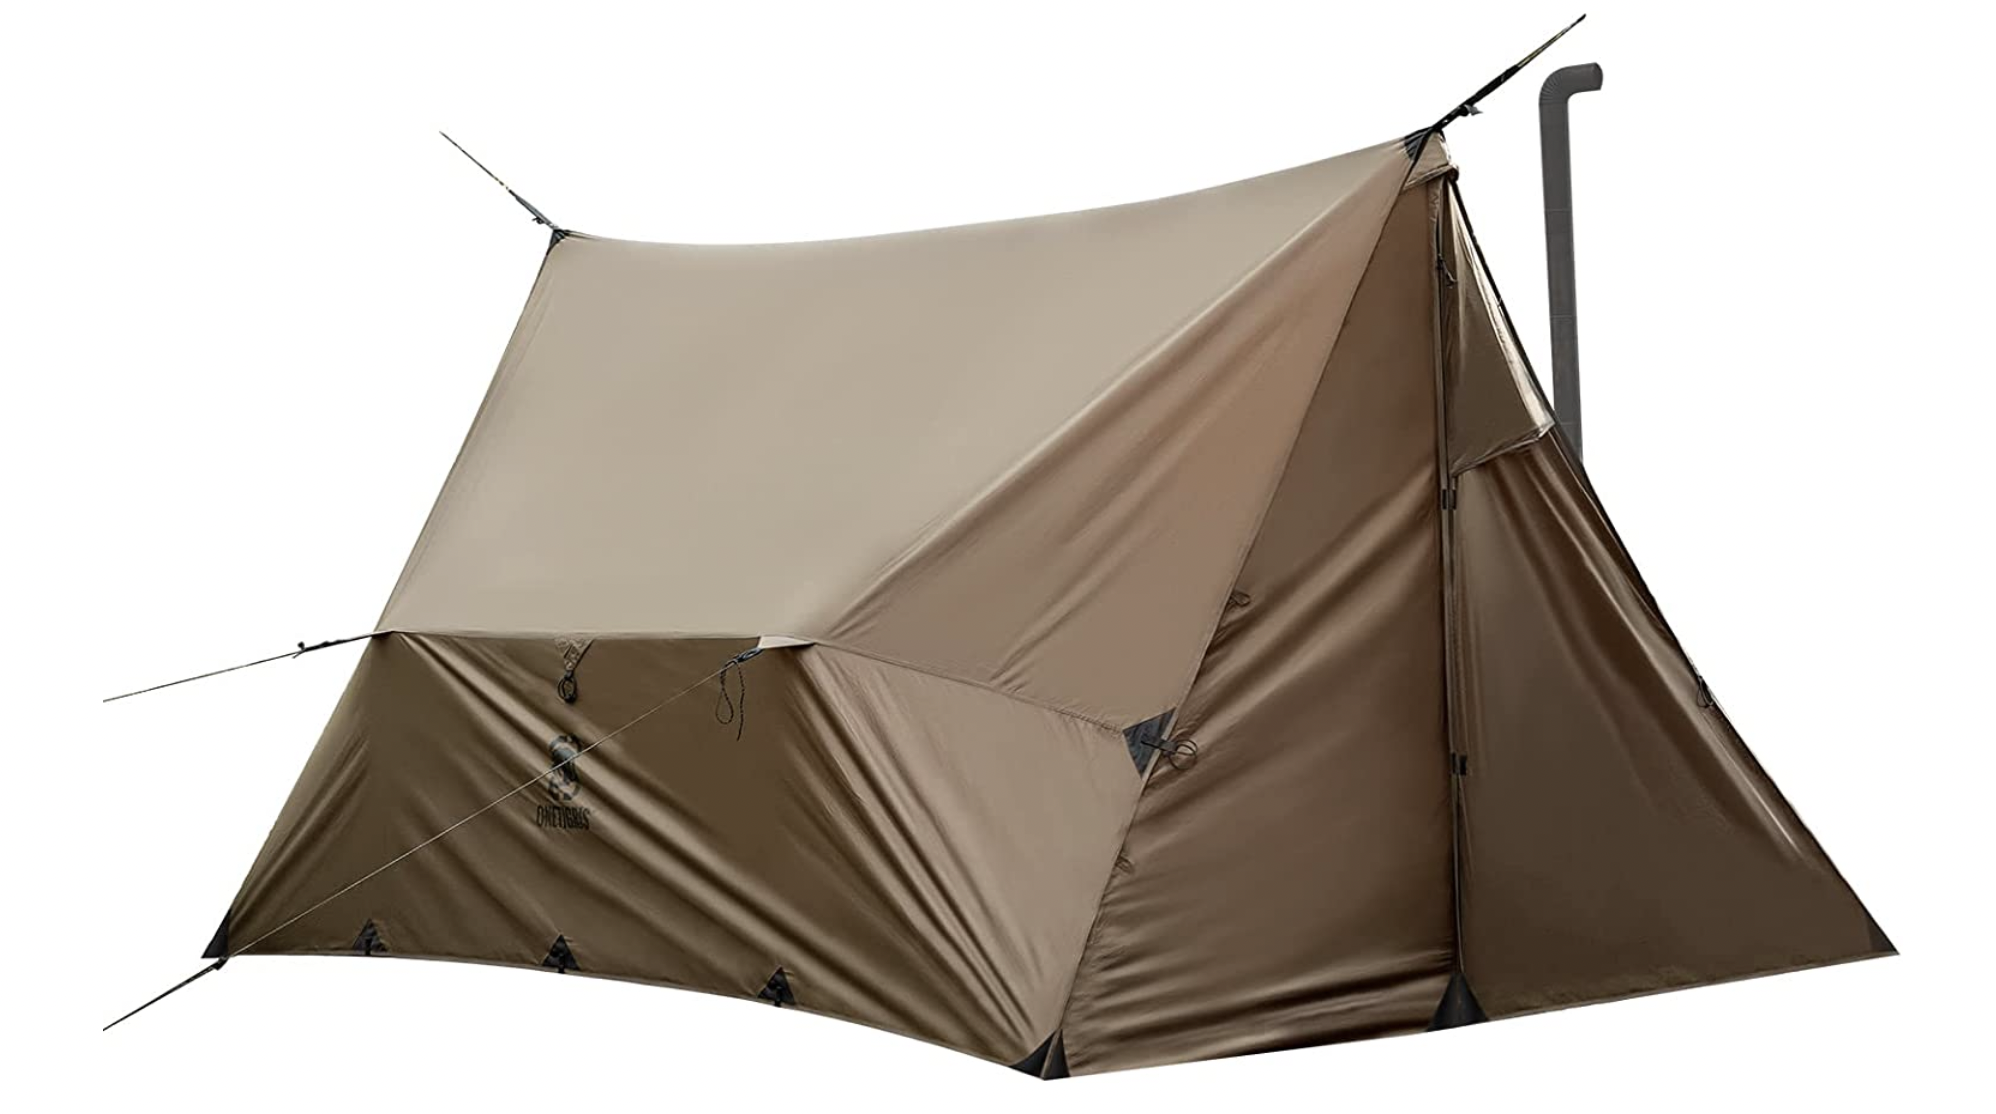 公式通販 ペグハンマー 軽量 真鍮 ヘッド ペグ ハンマー テント 多機能 ペグ打ち ペグ抜き キャンプ アウトドア タープテント 設営 BBQ  収納袋付 ストラップ付